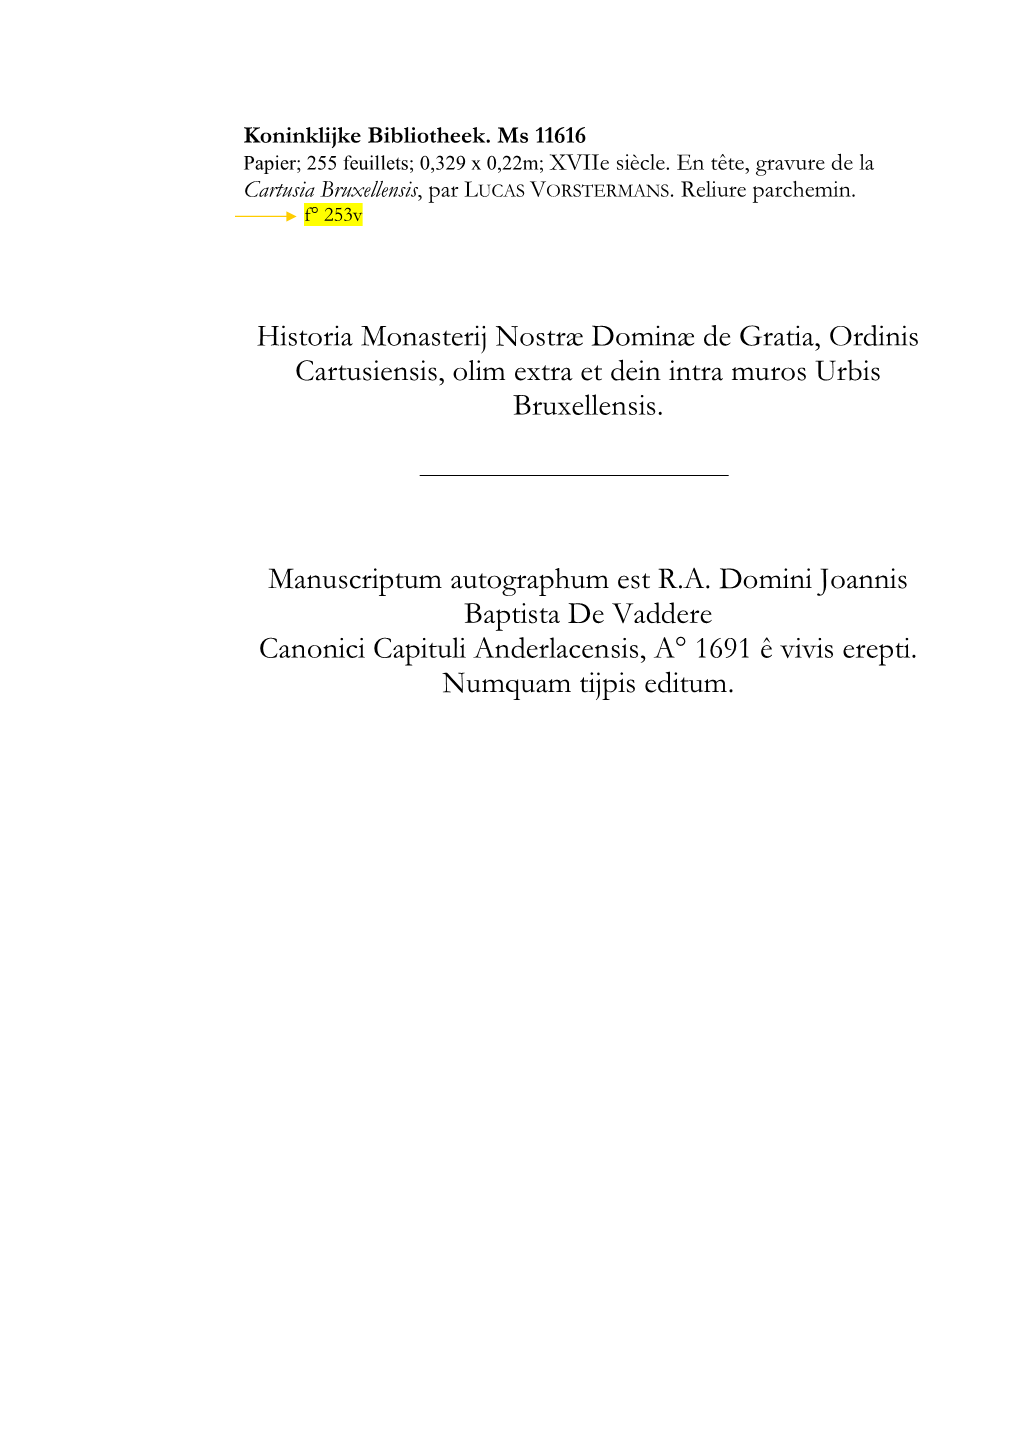 Historia Monasterij Nostræ Dominæ De Gratia, Ordinis Cartusiensis, Olim Extra Et Dein Intra Muros Urbis Bruxellensis. Manuscri